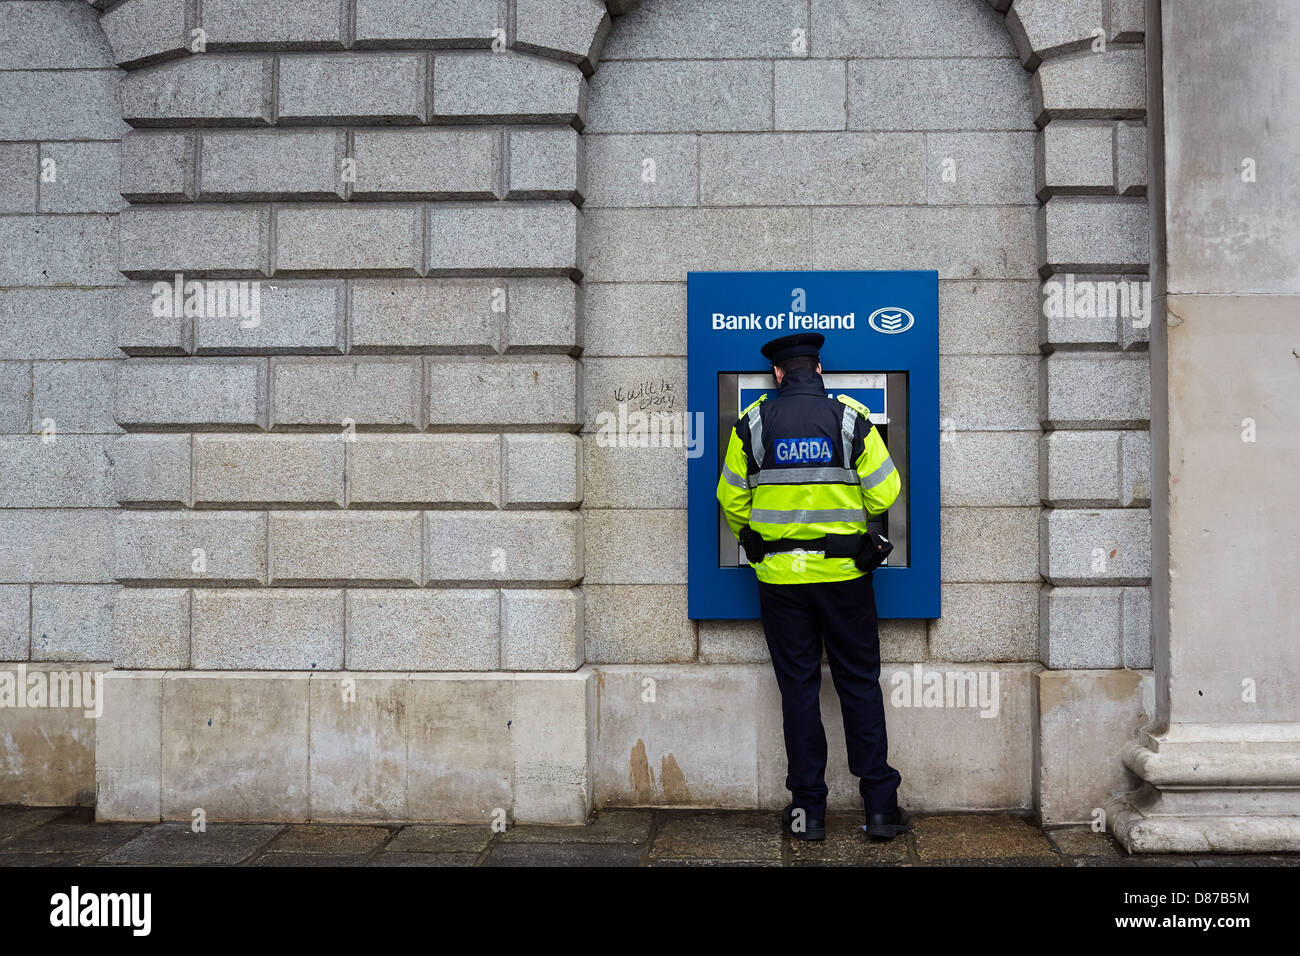 Miembro de la Garda (policía irlandesa) usando un cajero automático en el banco de Irlanda durante una recesión. College Green, Dublín, Irlanda Foto de stock